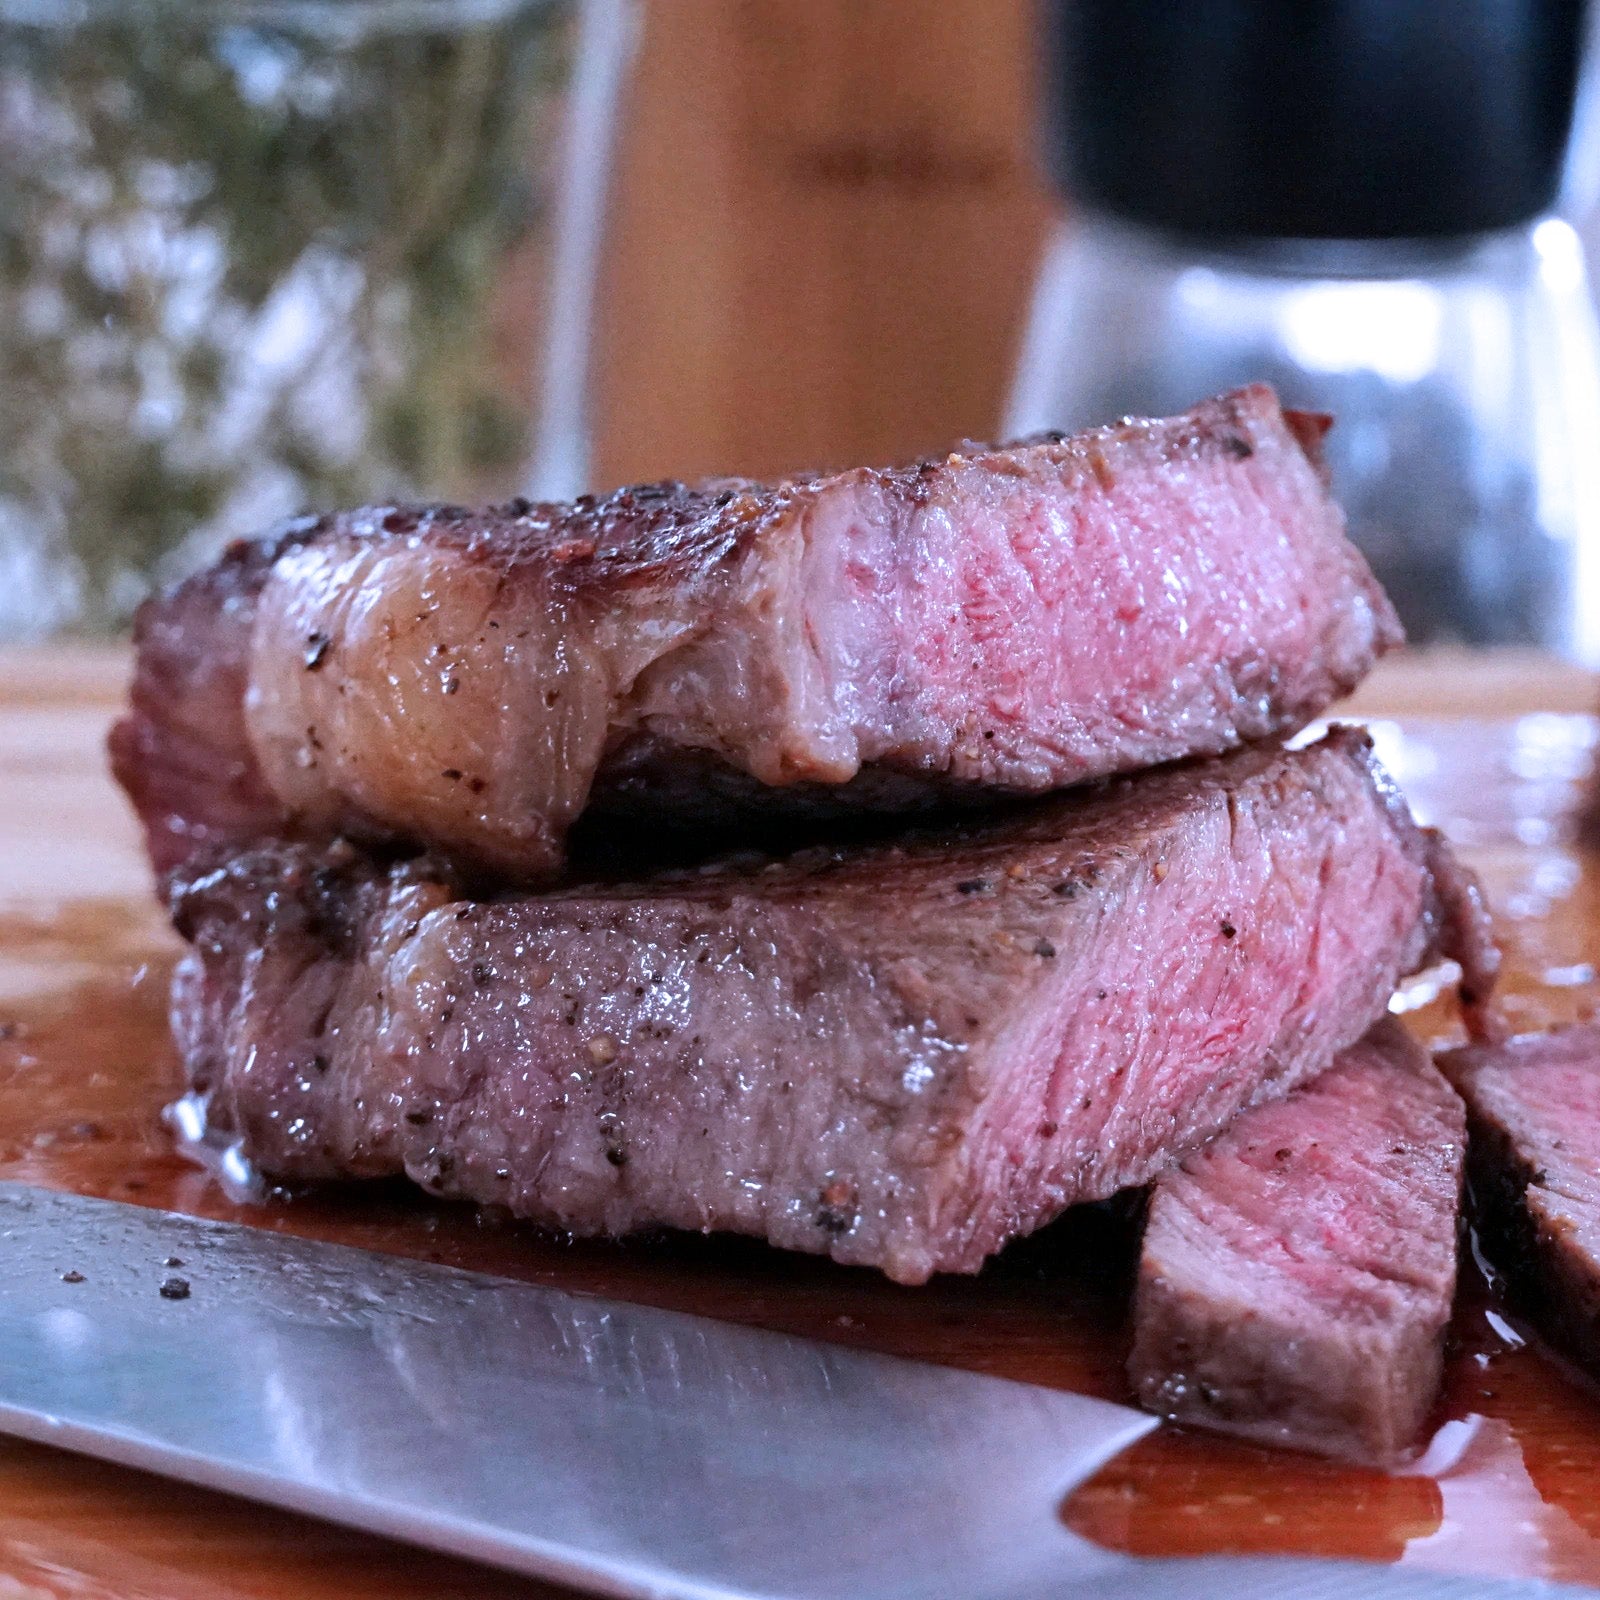 プレミアム グレインフェッドビーフ 霜降り 牛肉 サーロイン ステーキ オーストラリア産 放牧牛 (200g) ホライズンファームズ